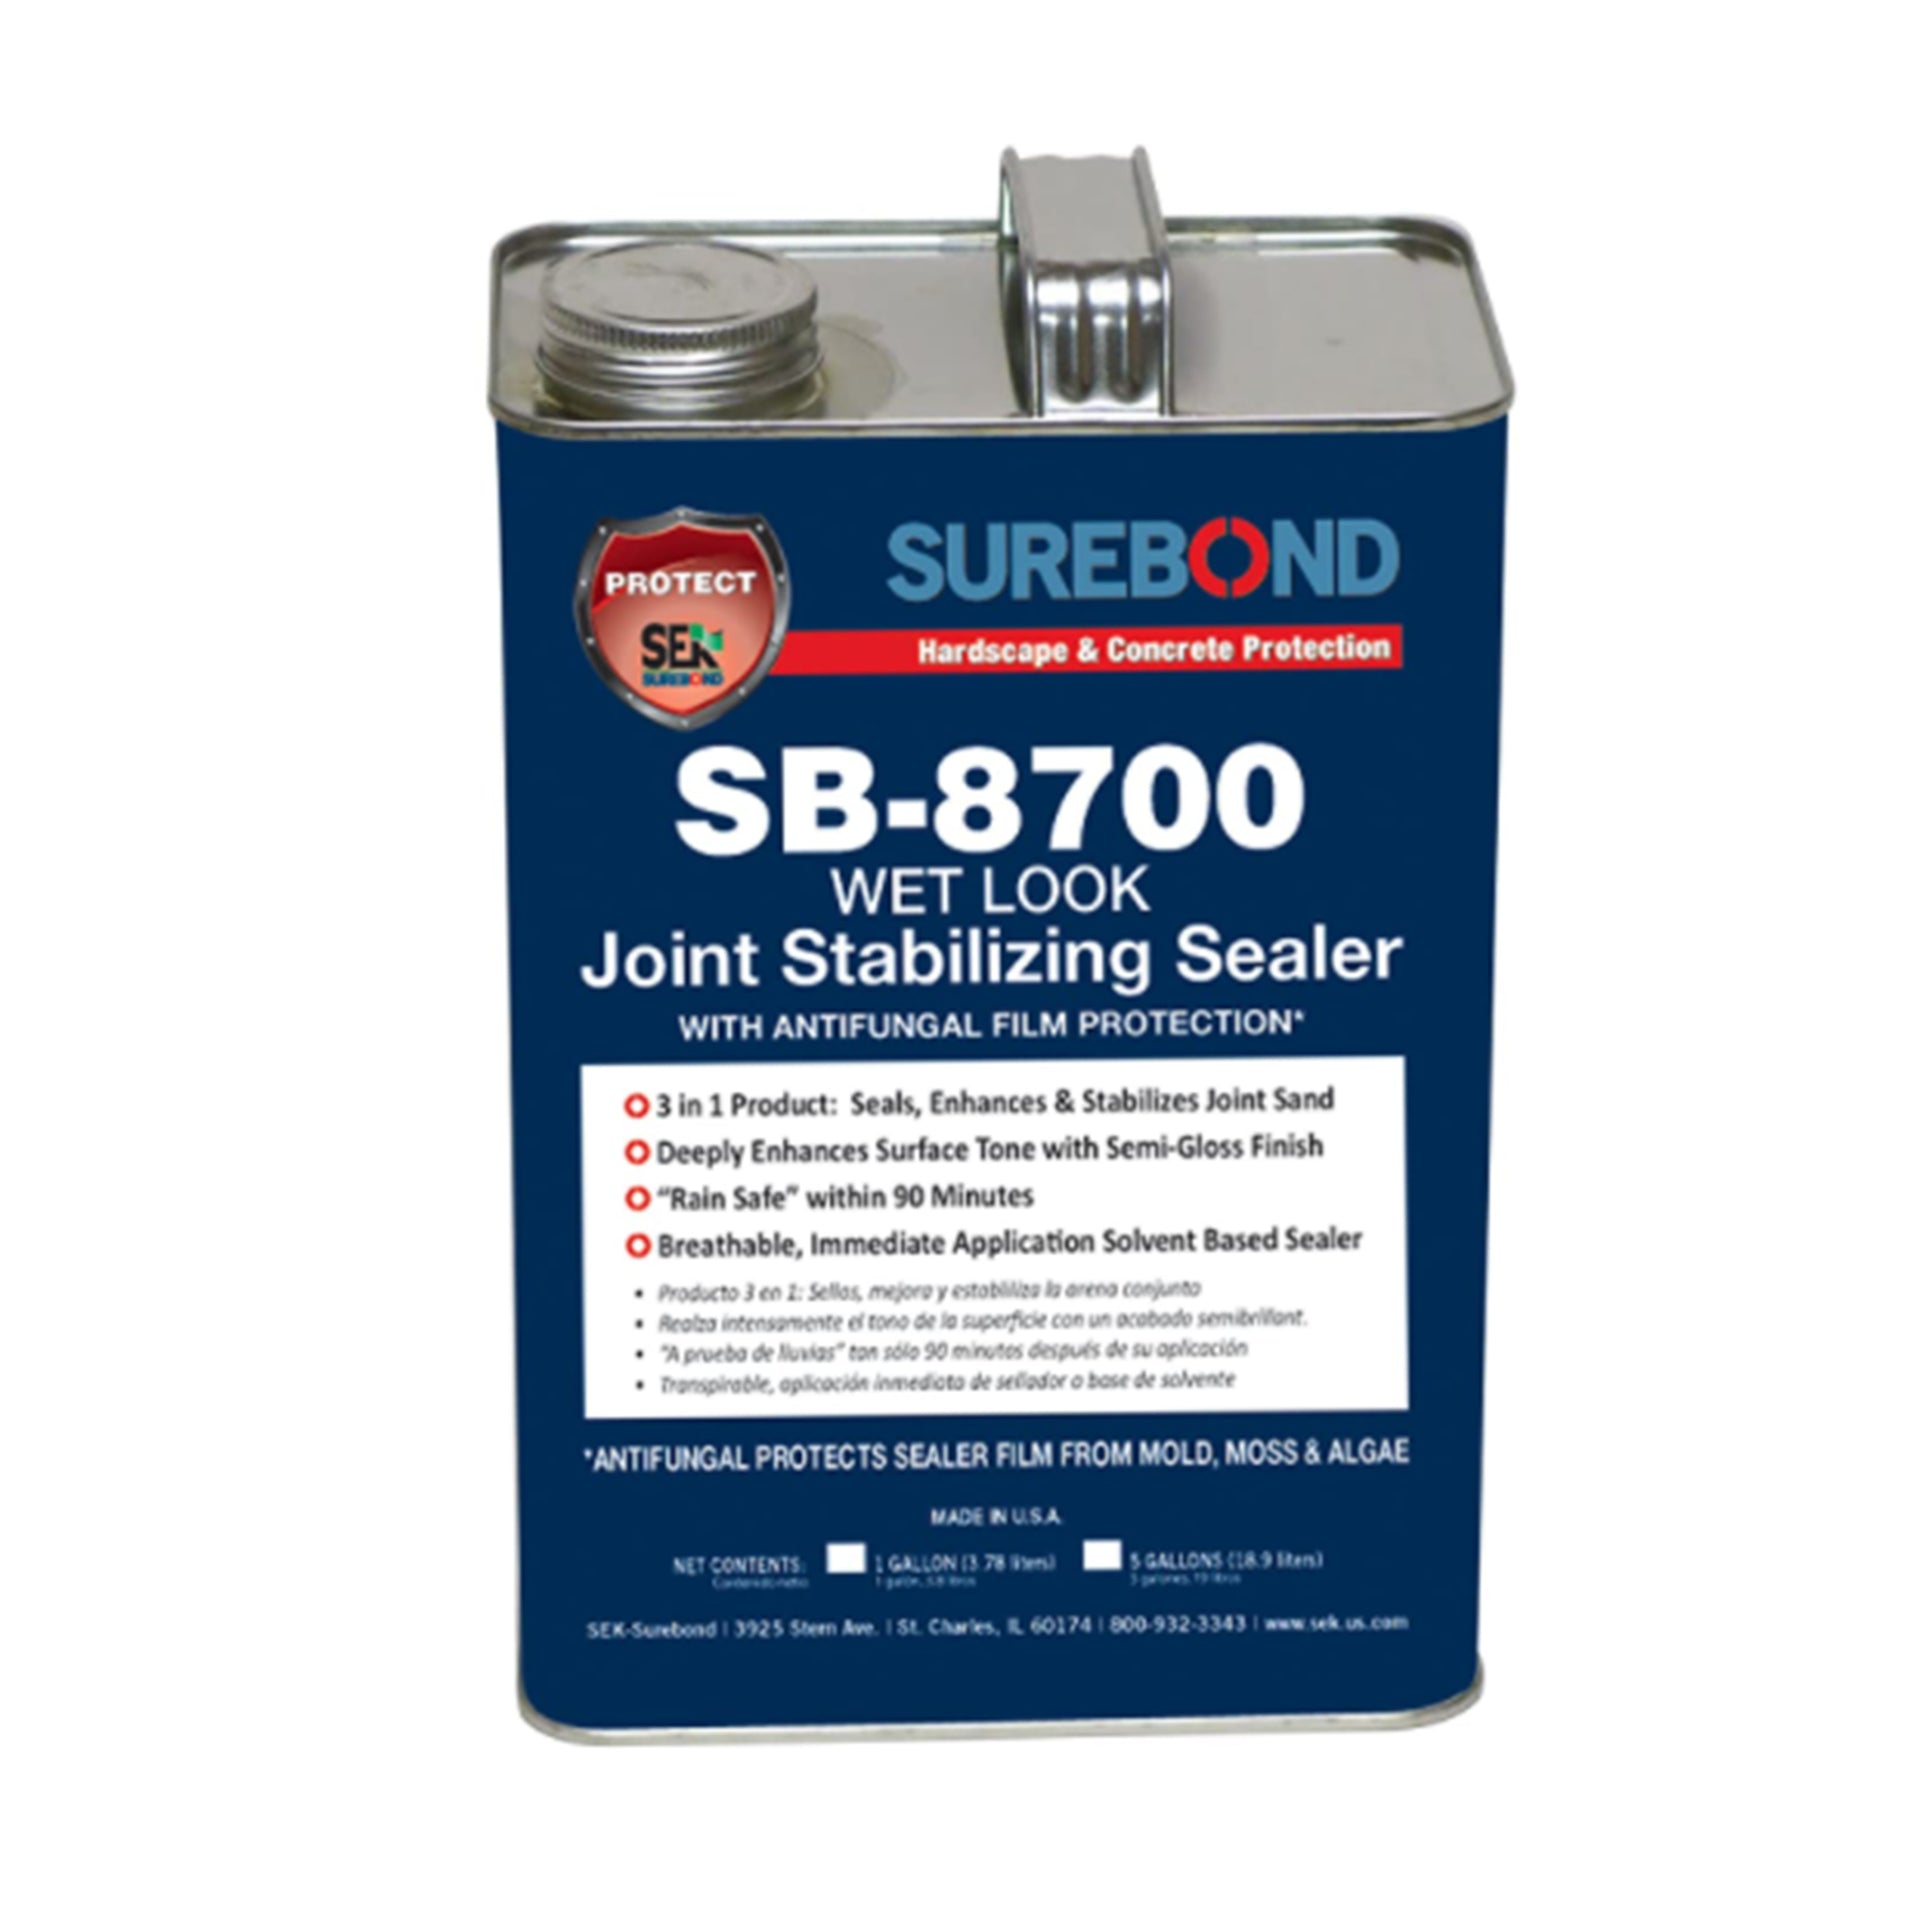 SpecPoxy Sealer 70% Solids Penetrating Epoxy Sealer